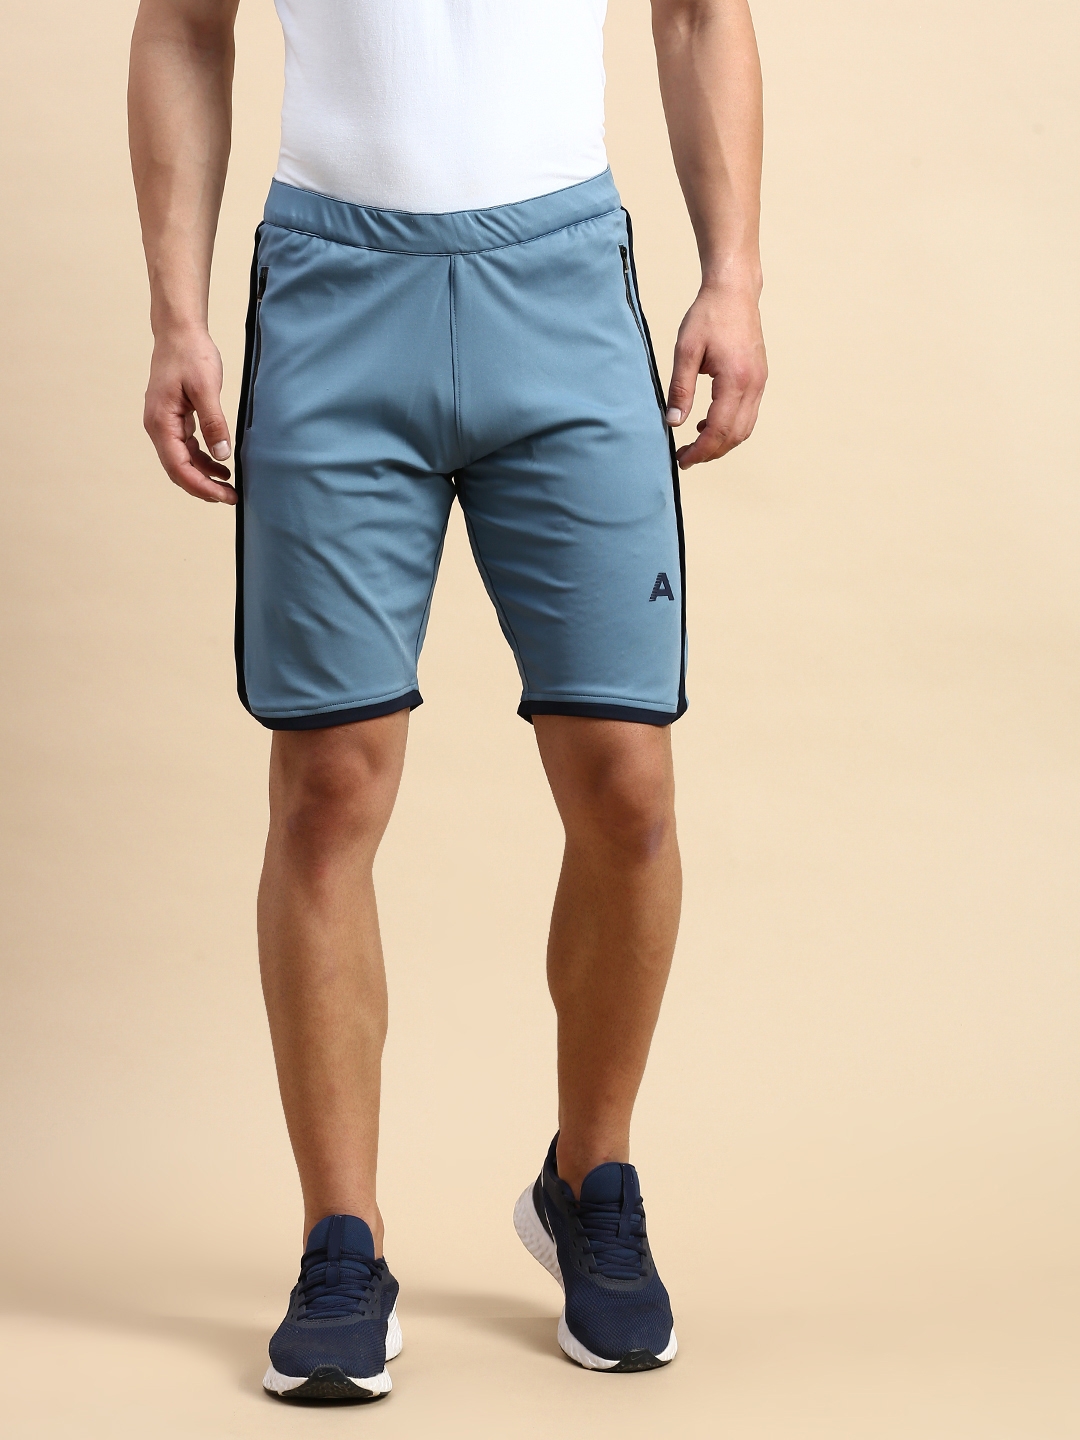 SHOWOFF Men's Knee Length Solid Blue Mid-Rise Regular Shorts